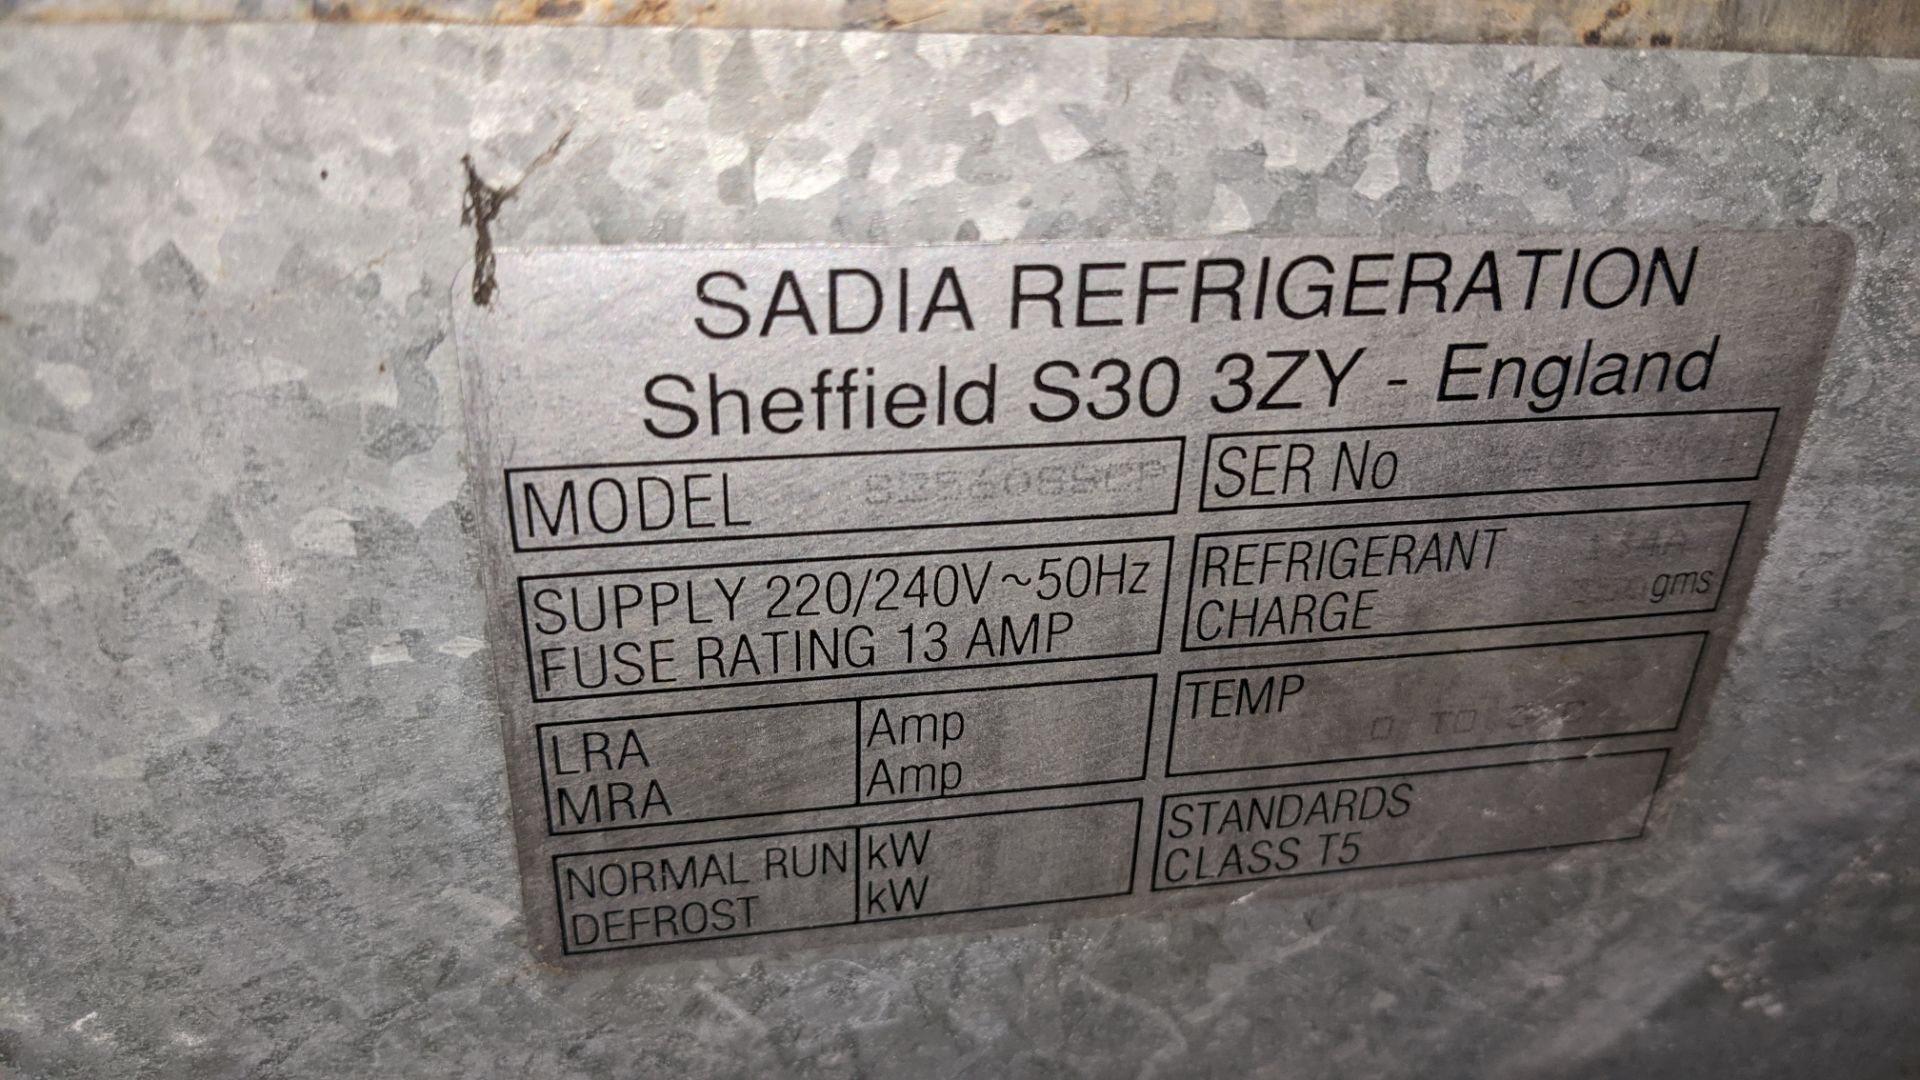 Sadia Refrigeration Senator fridge - Image 7 of 8